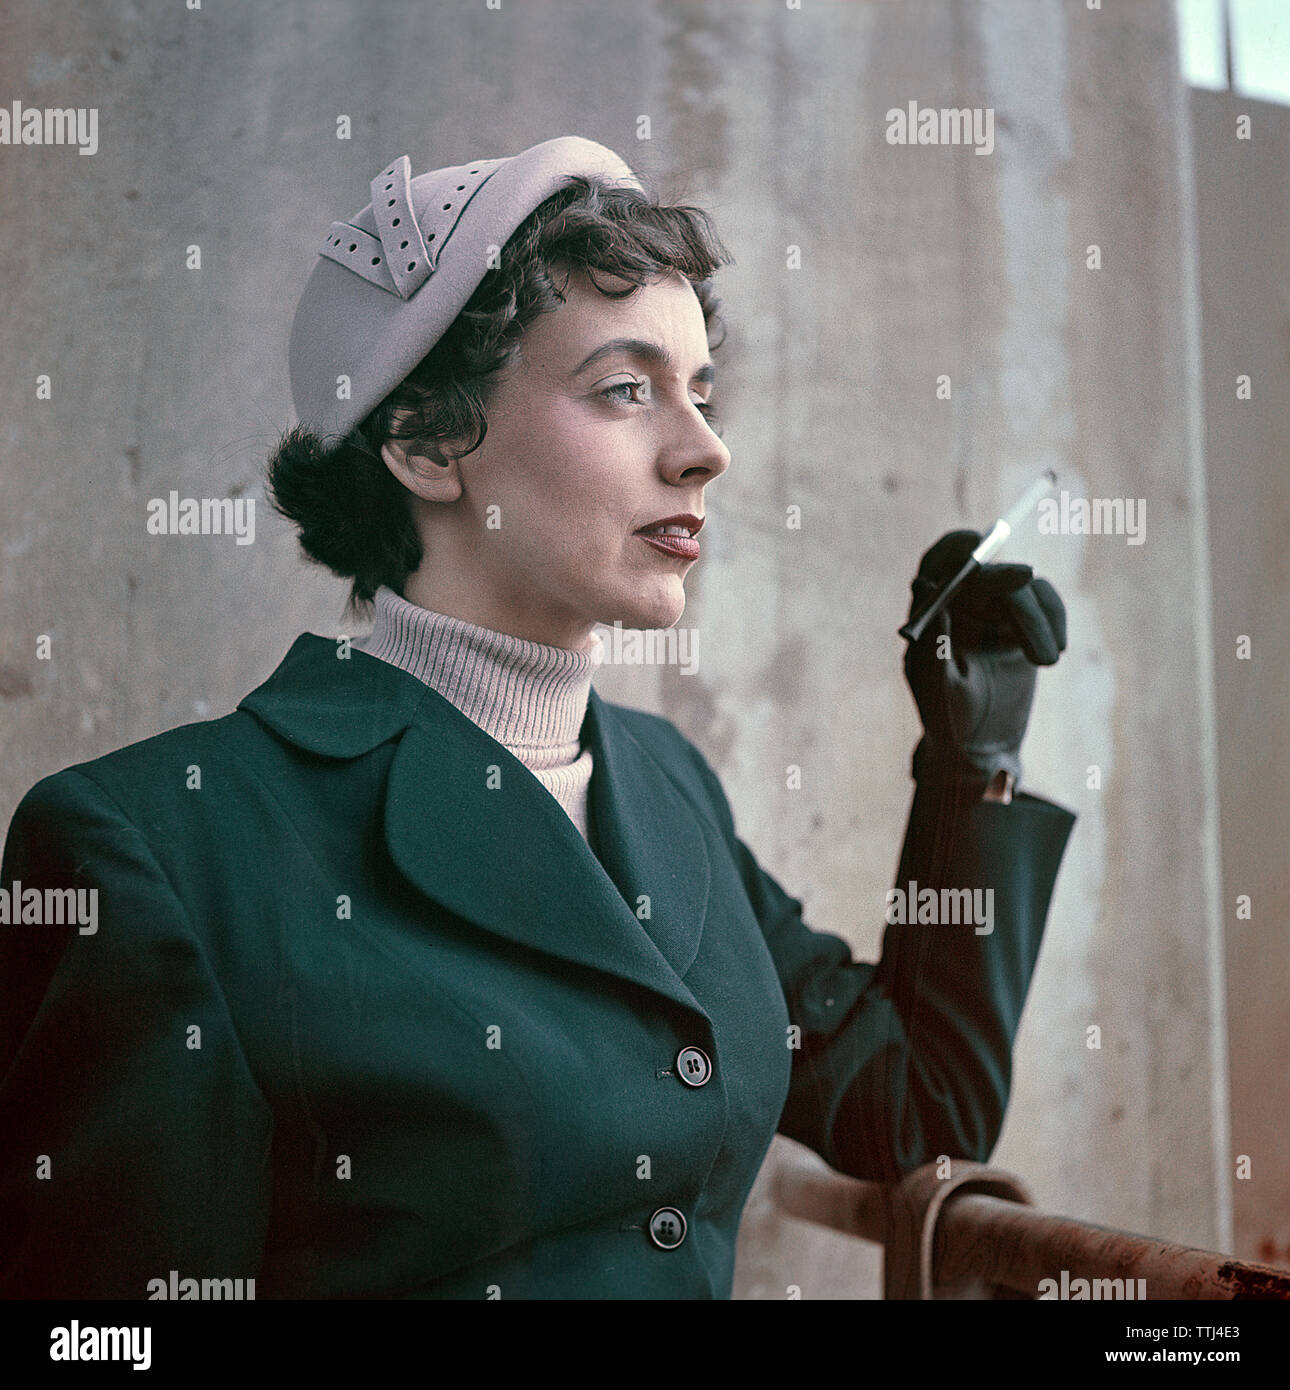 Années 1950 La mode féminine. Une jeune femme portant un costume typique  50s. Une veste verte et un chapeau assorti. Elle utilise un porte-cigarette.  La Suède des années 1950. Annonce5-11 Photo Stock -